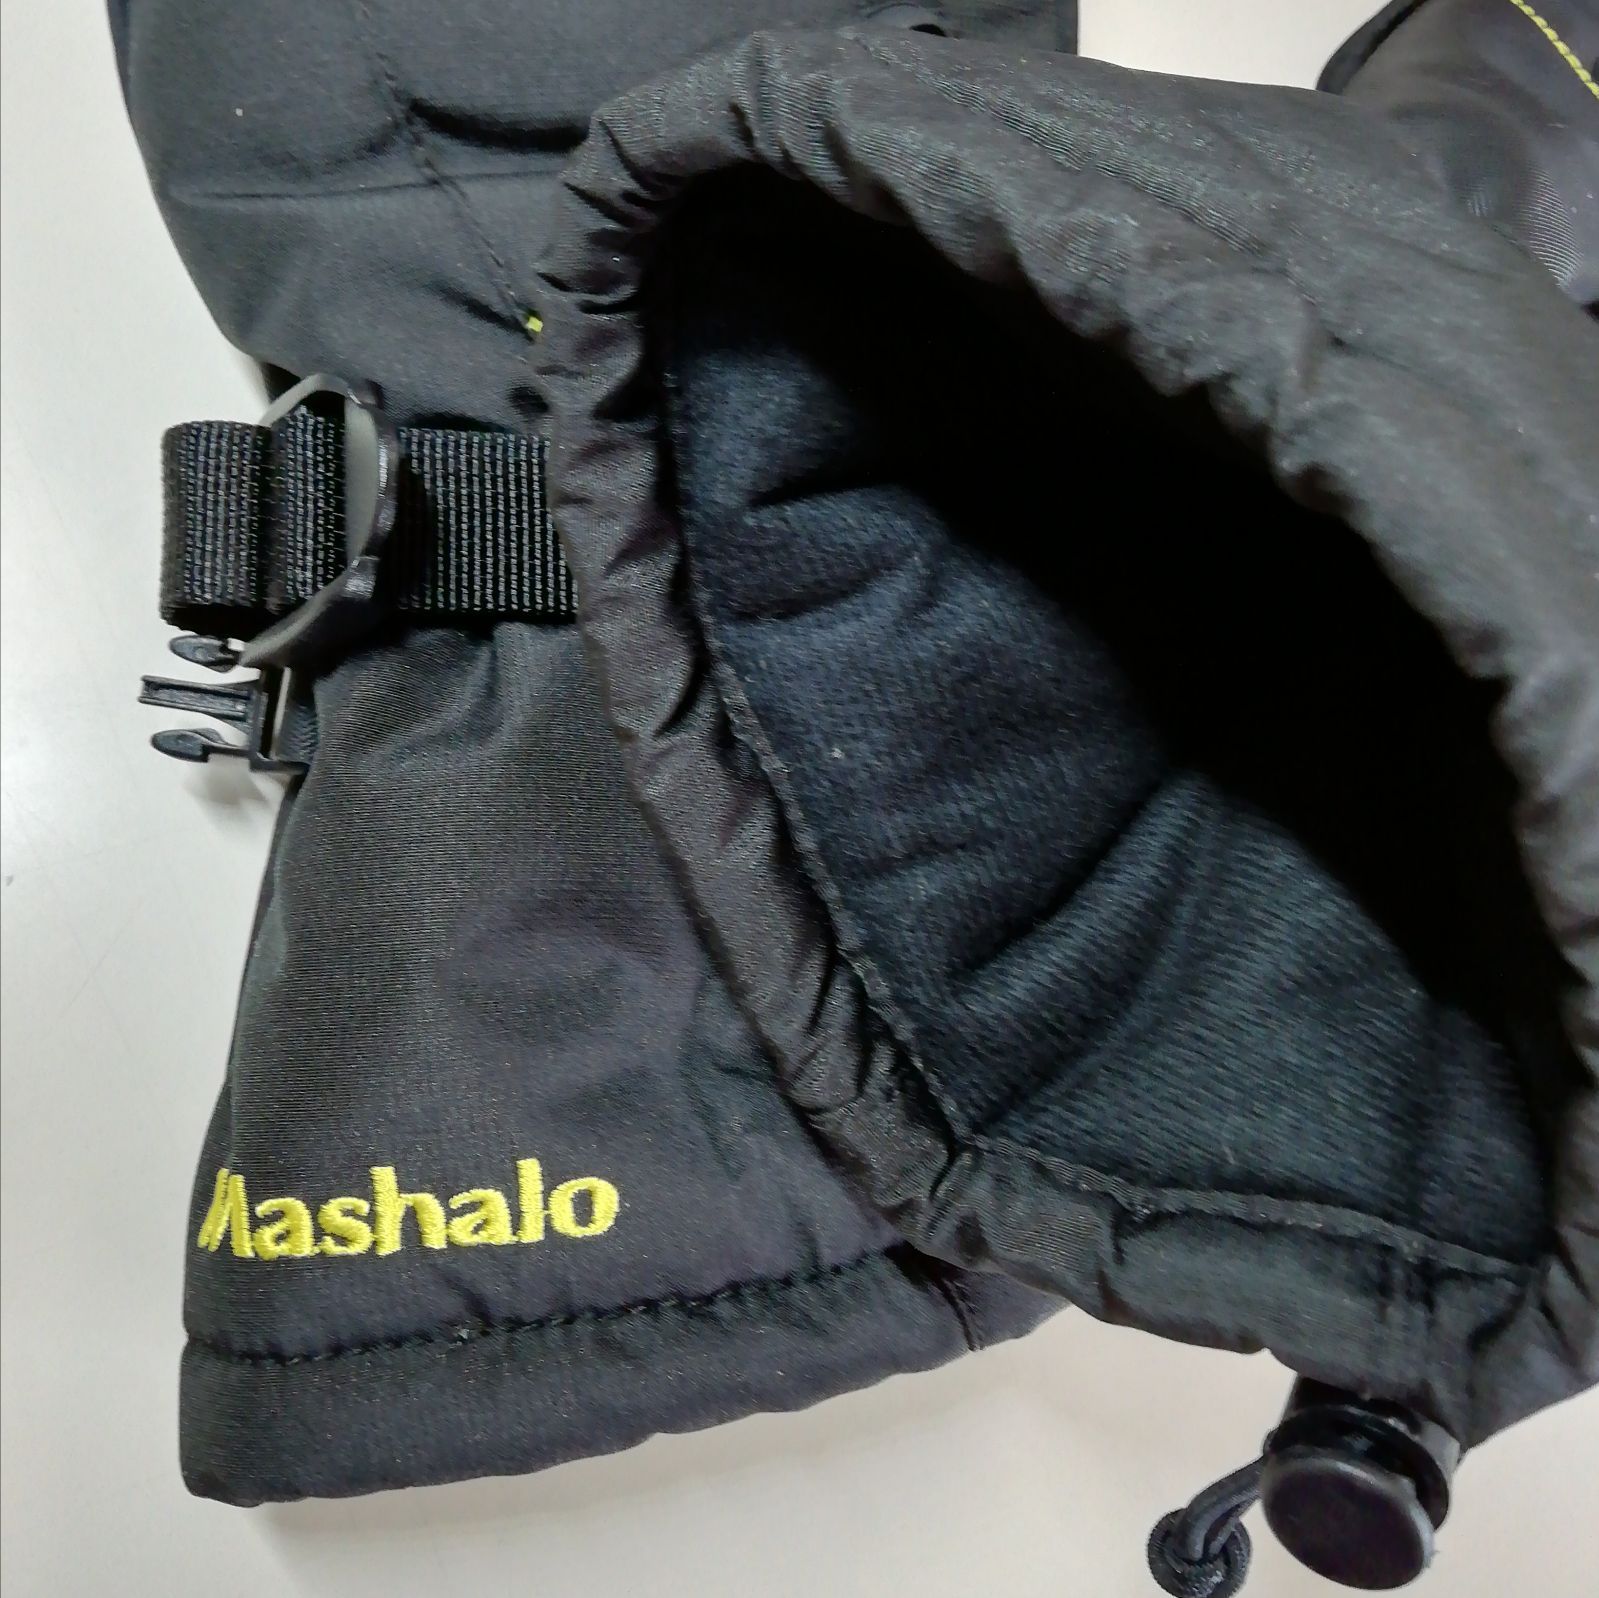 Mashalo/マシャロ メンズグローブ MSG-216 BLKxMIX - メルカリ